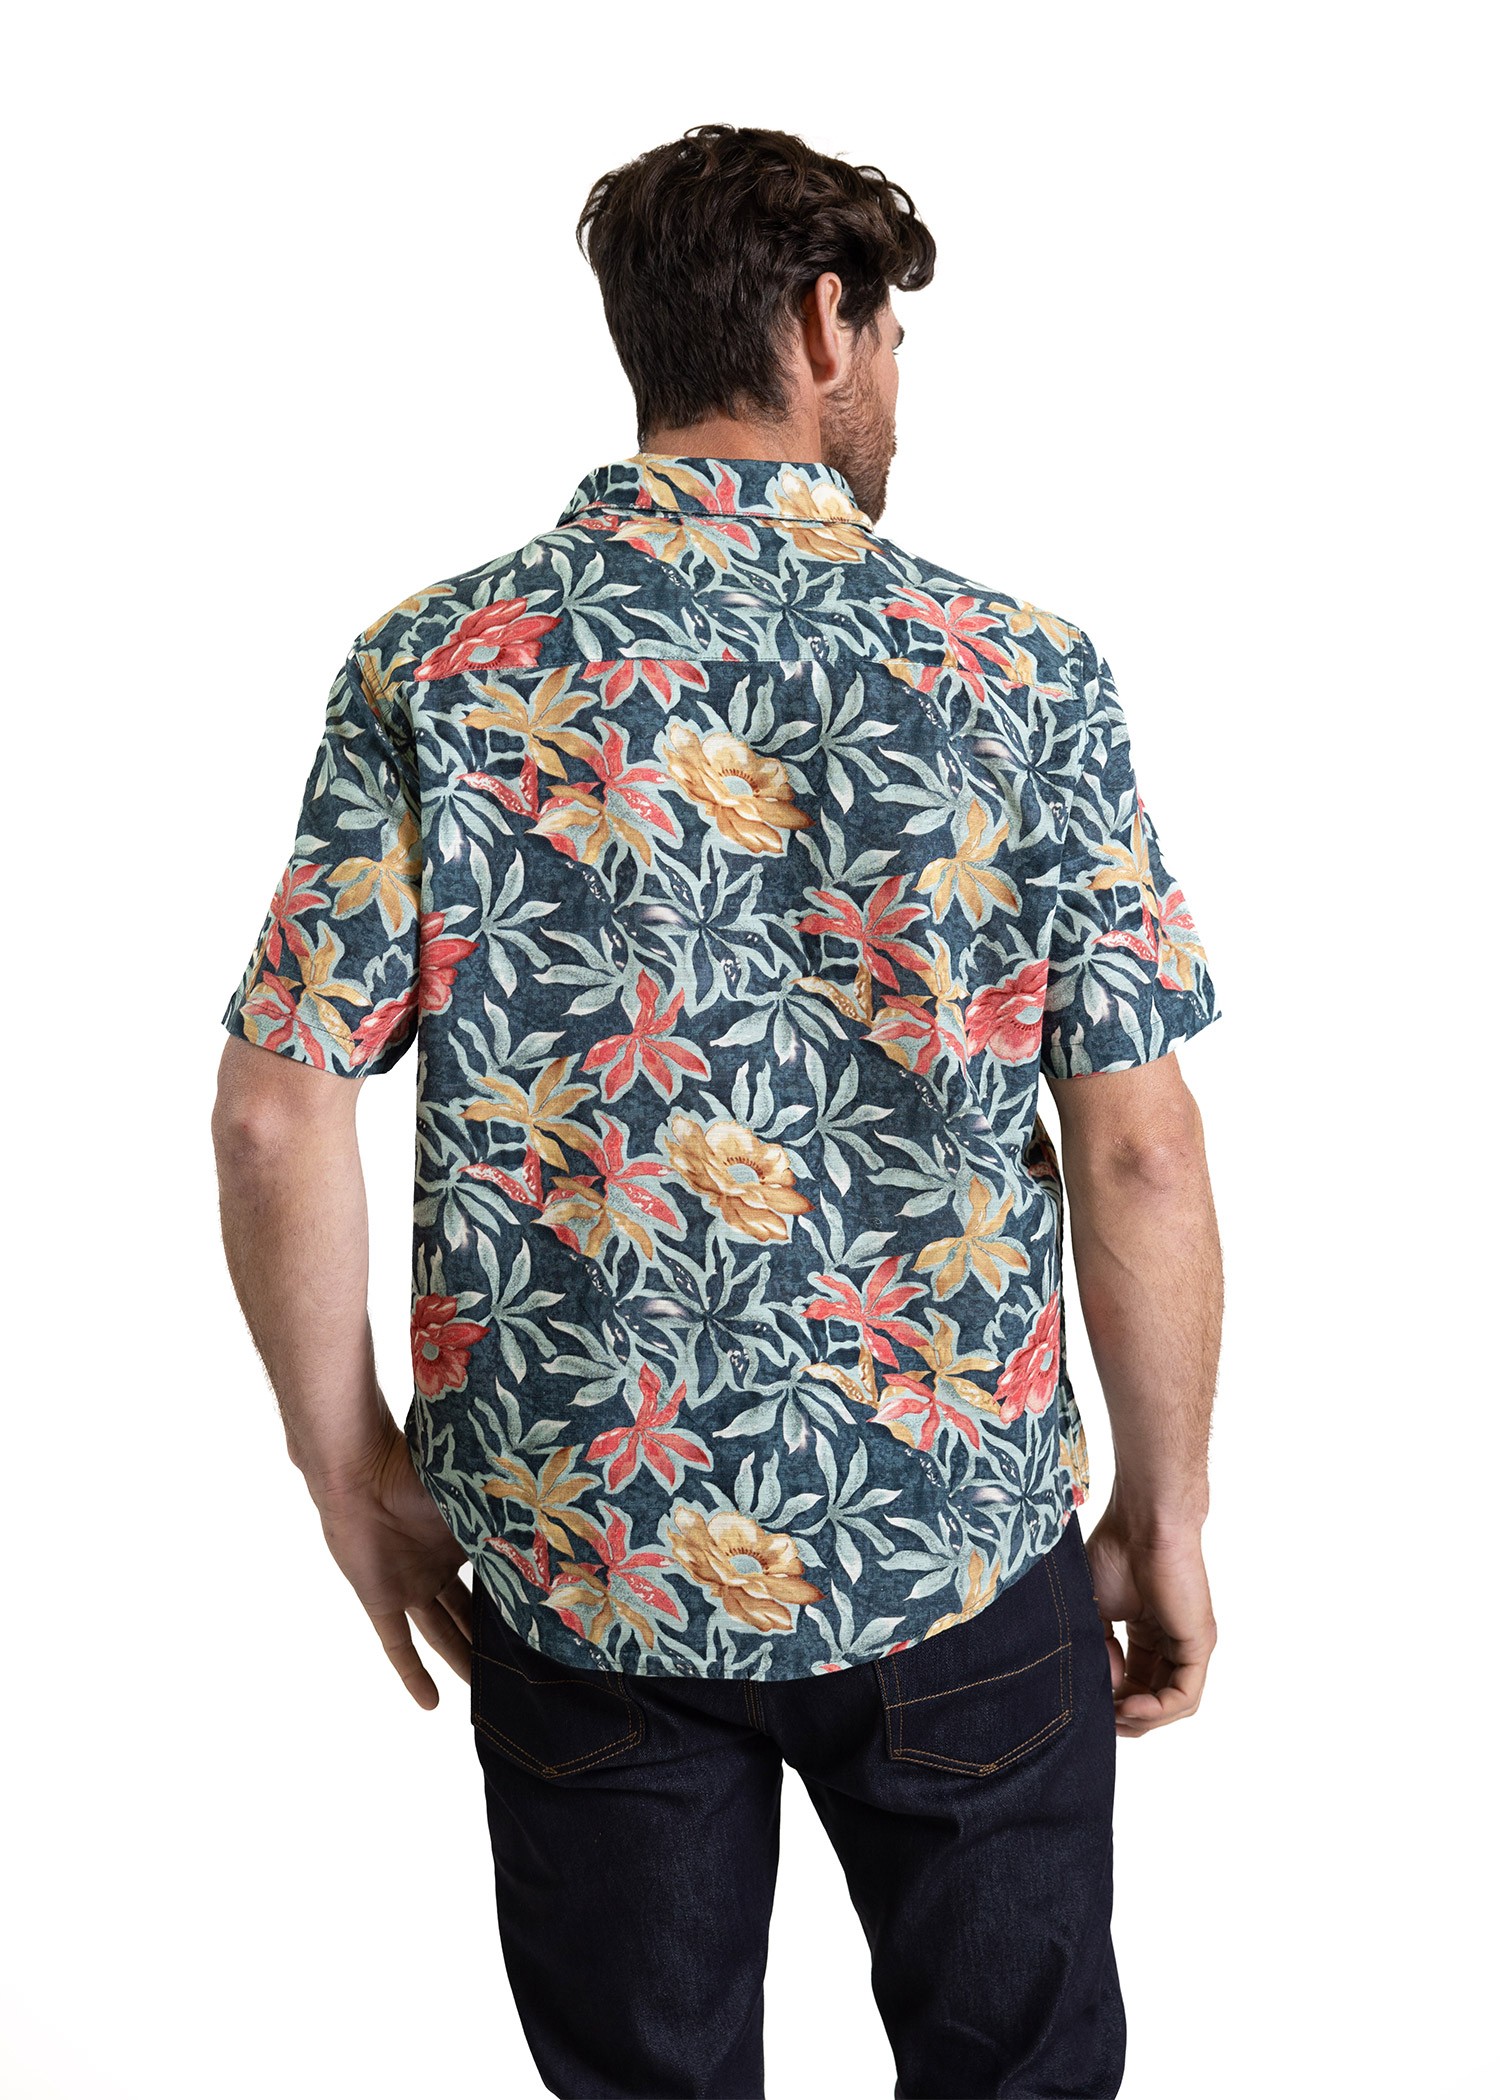 Mauna Shirt - Produits a traiter